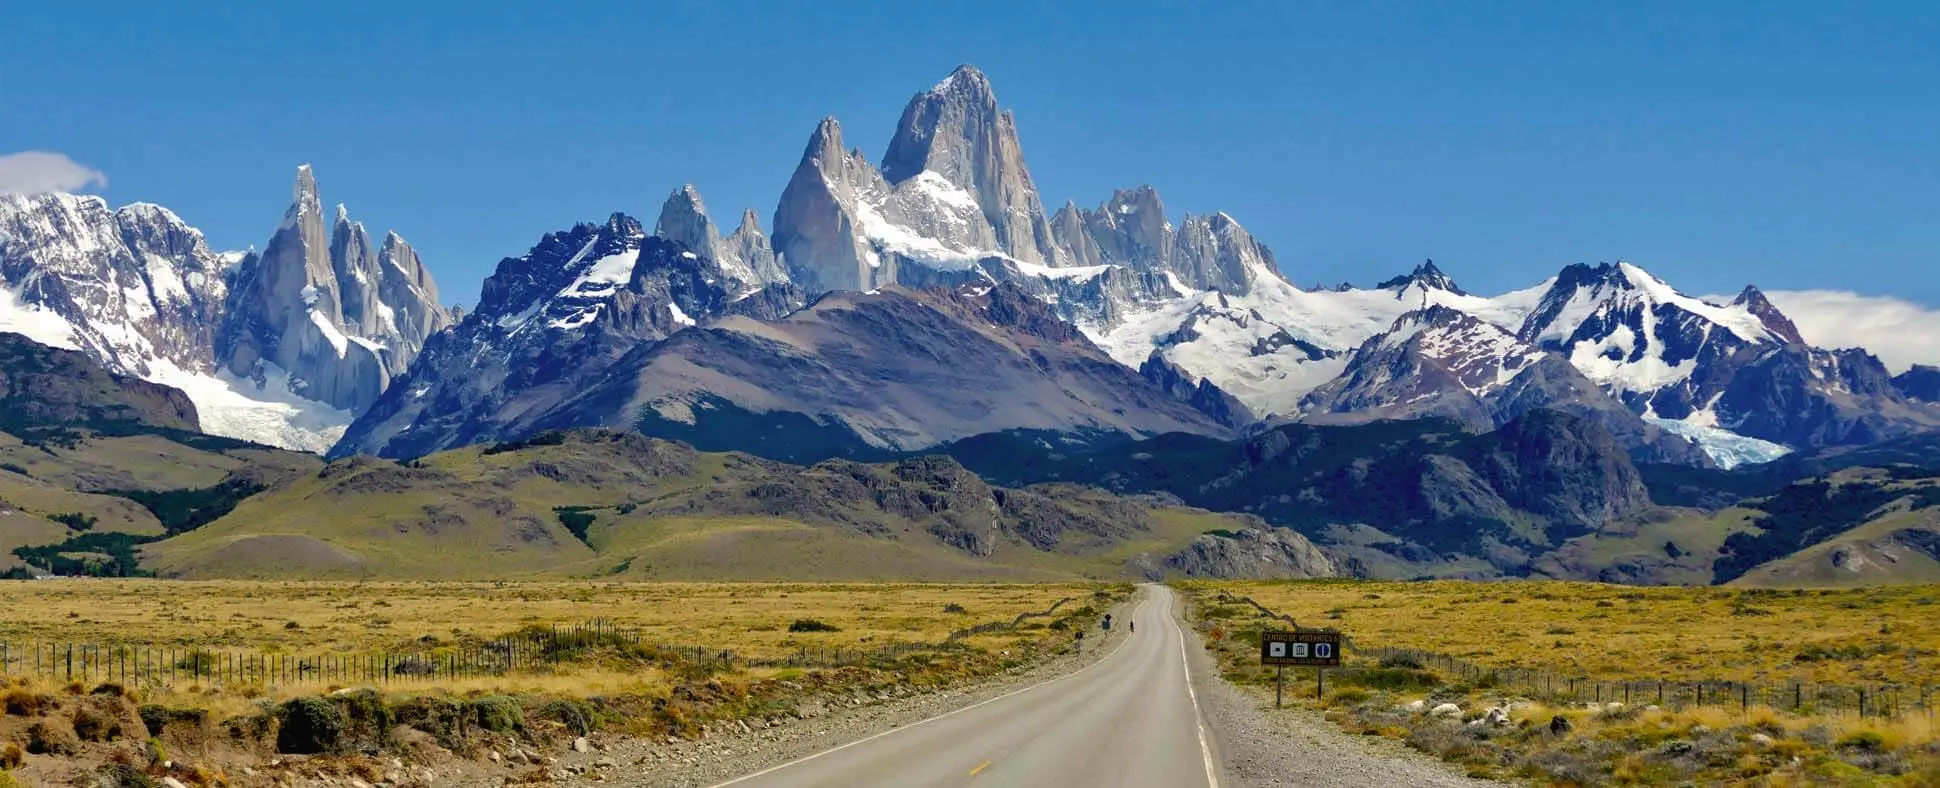 camino ferrari patagonia argentinaruta - Cuántos días se necesitan para conocer la Patagonia